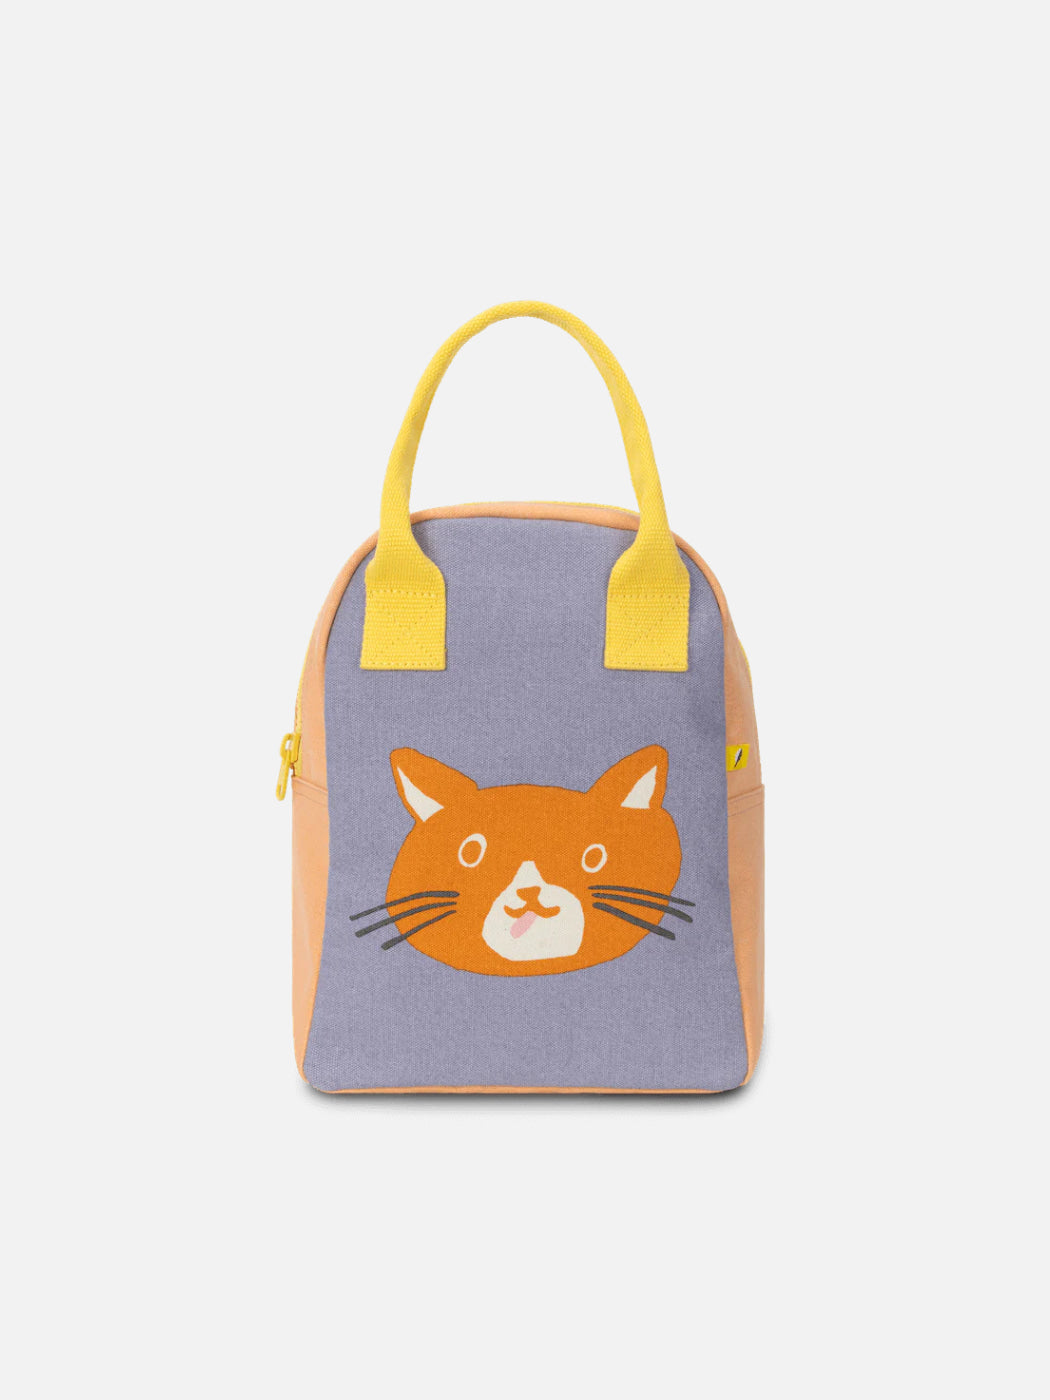 Zipper Lunch Bag - Cat